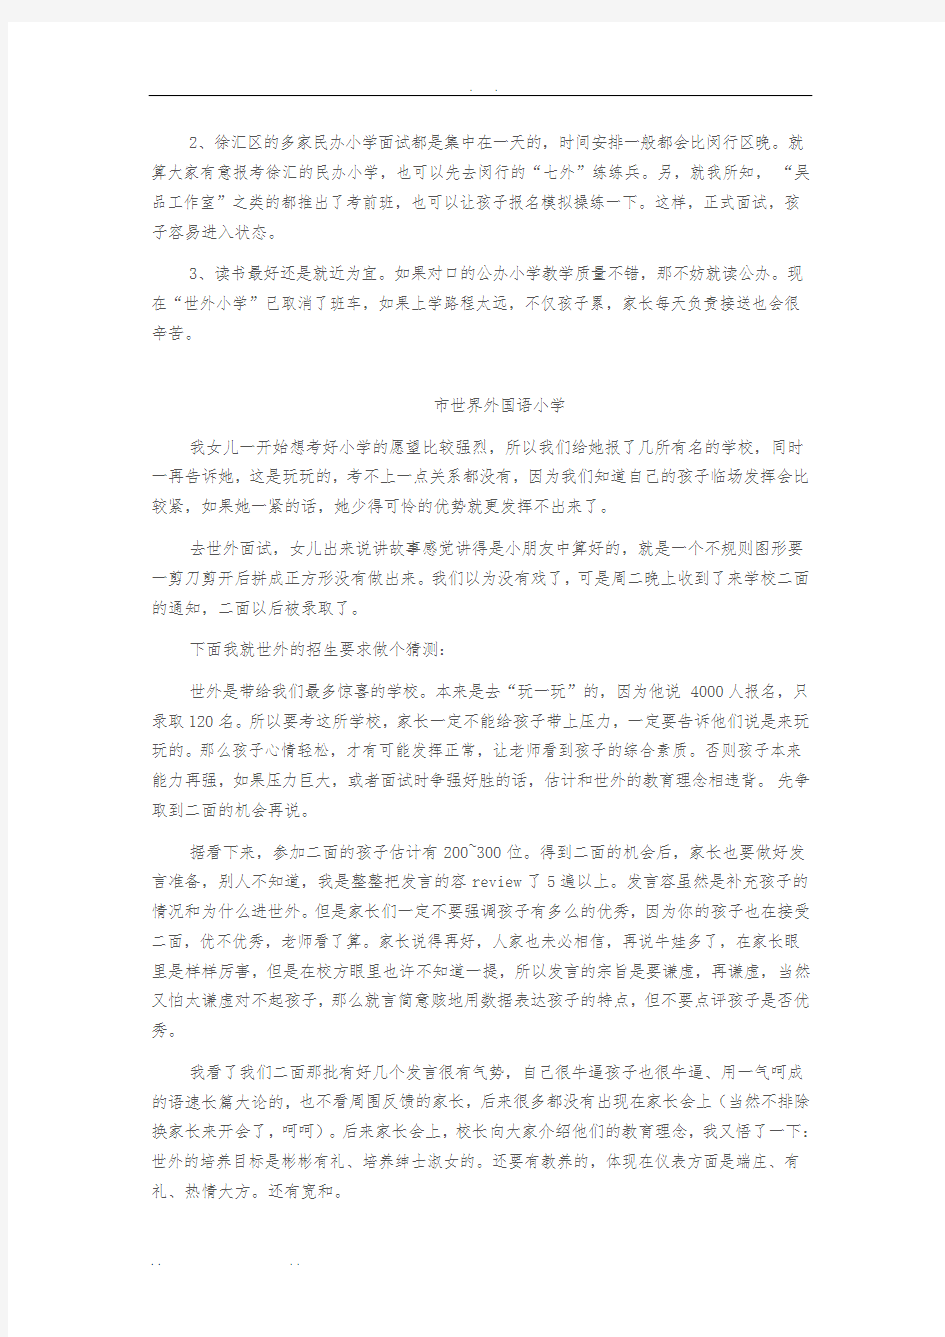 上海世界外国语小学面试攻略及真题版